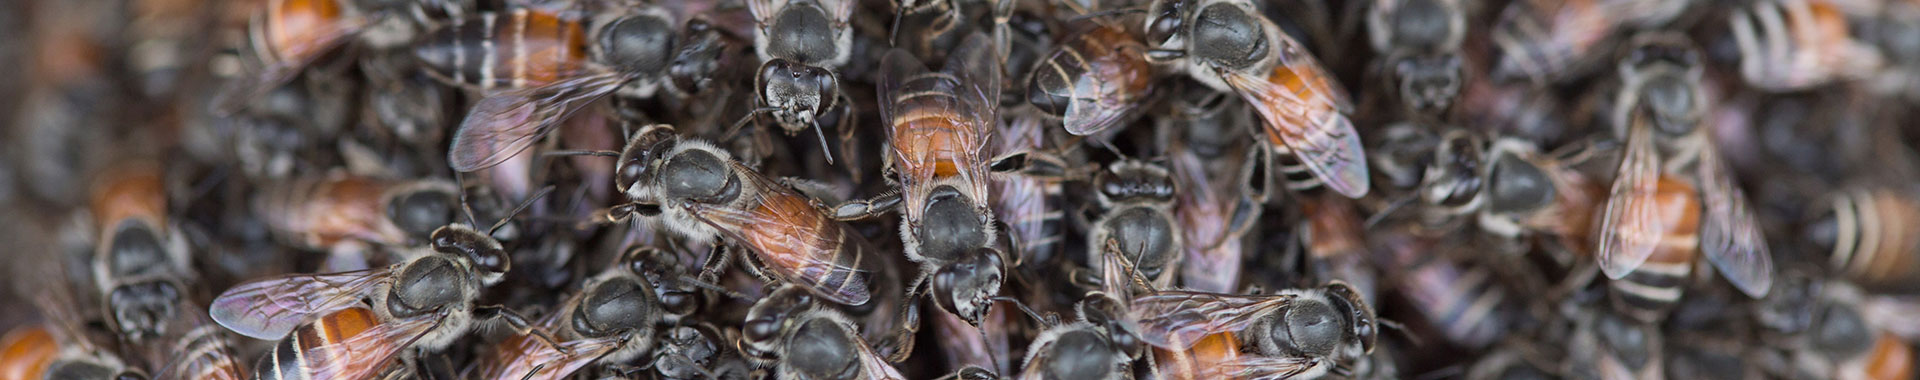 Viele Honigbienen sitzen nah aneinander 